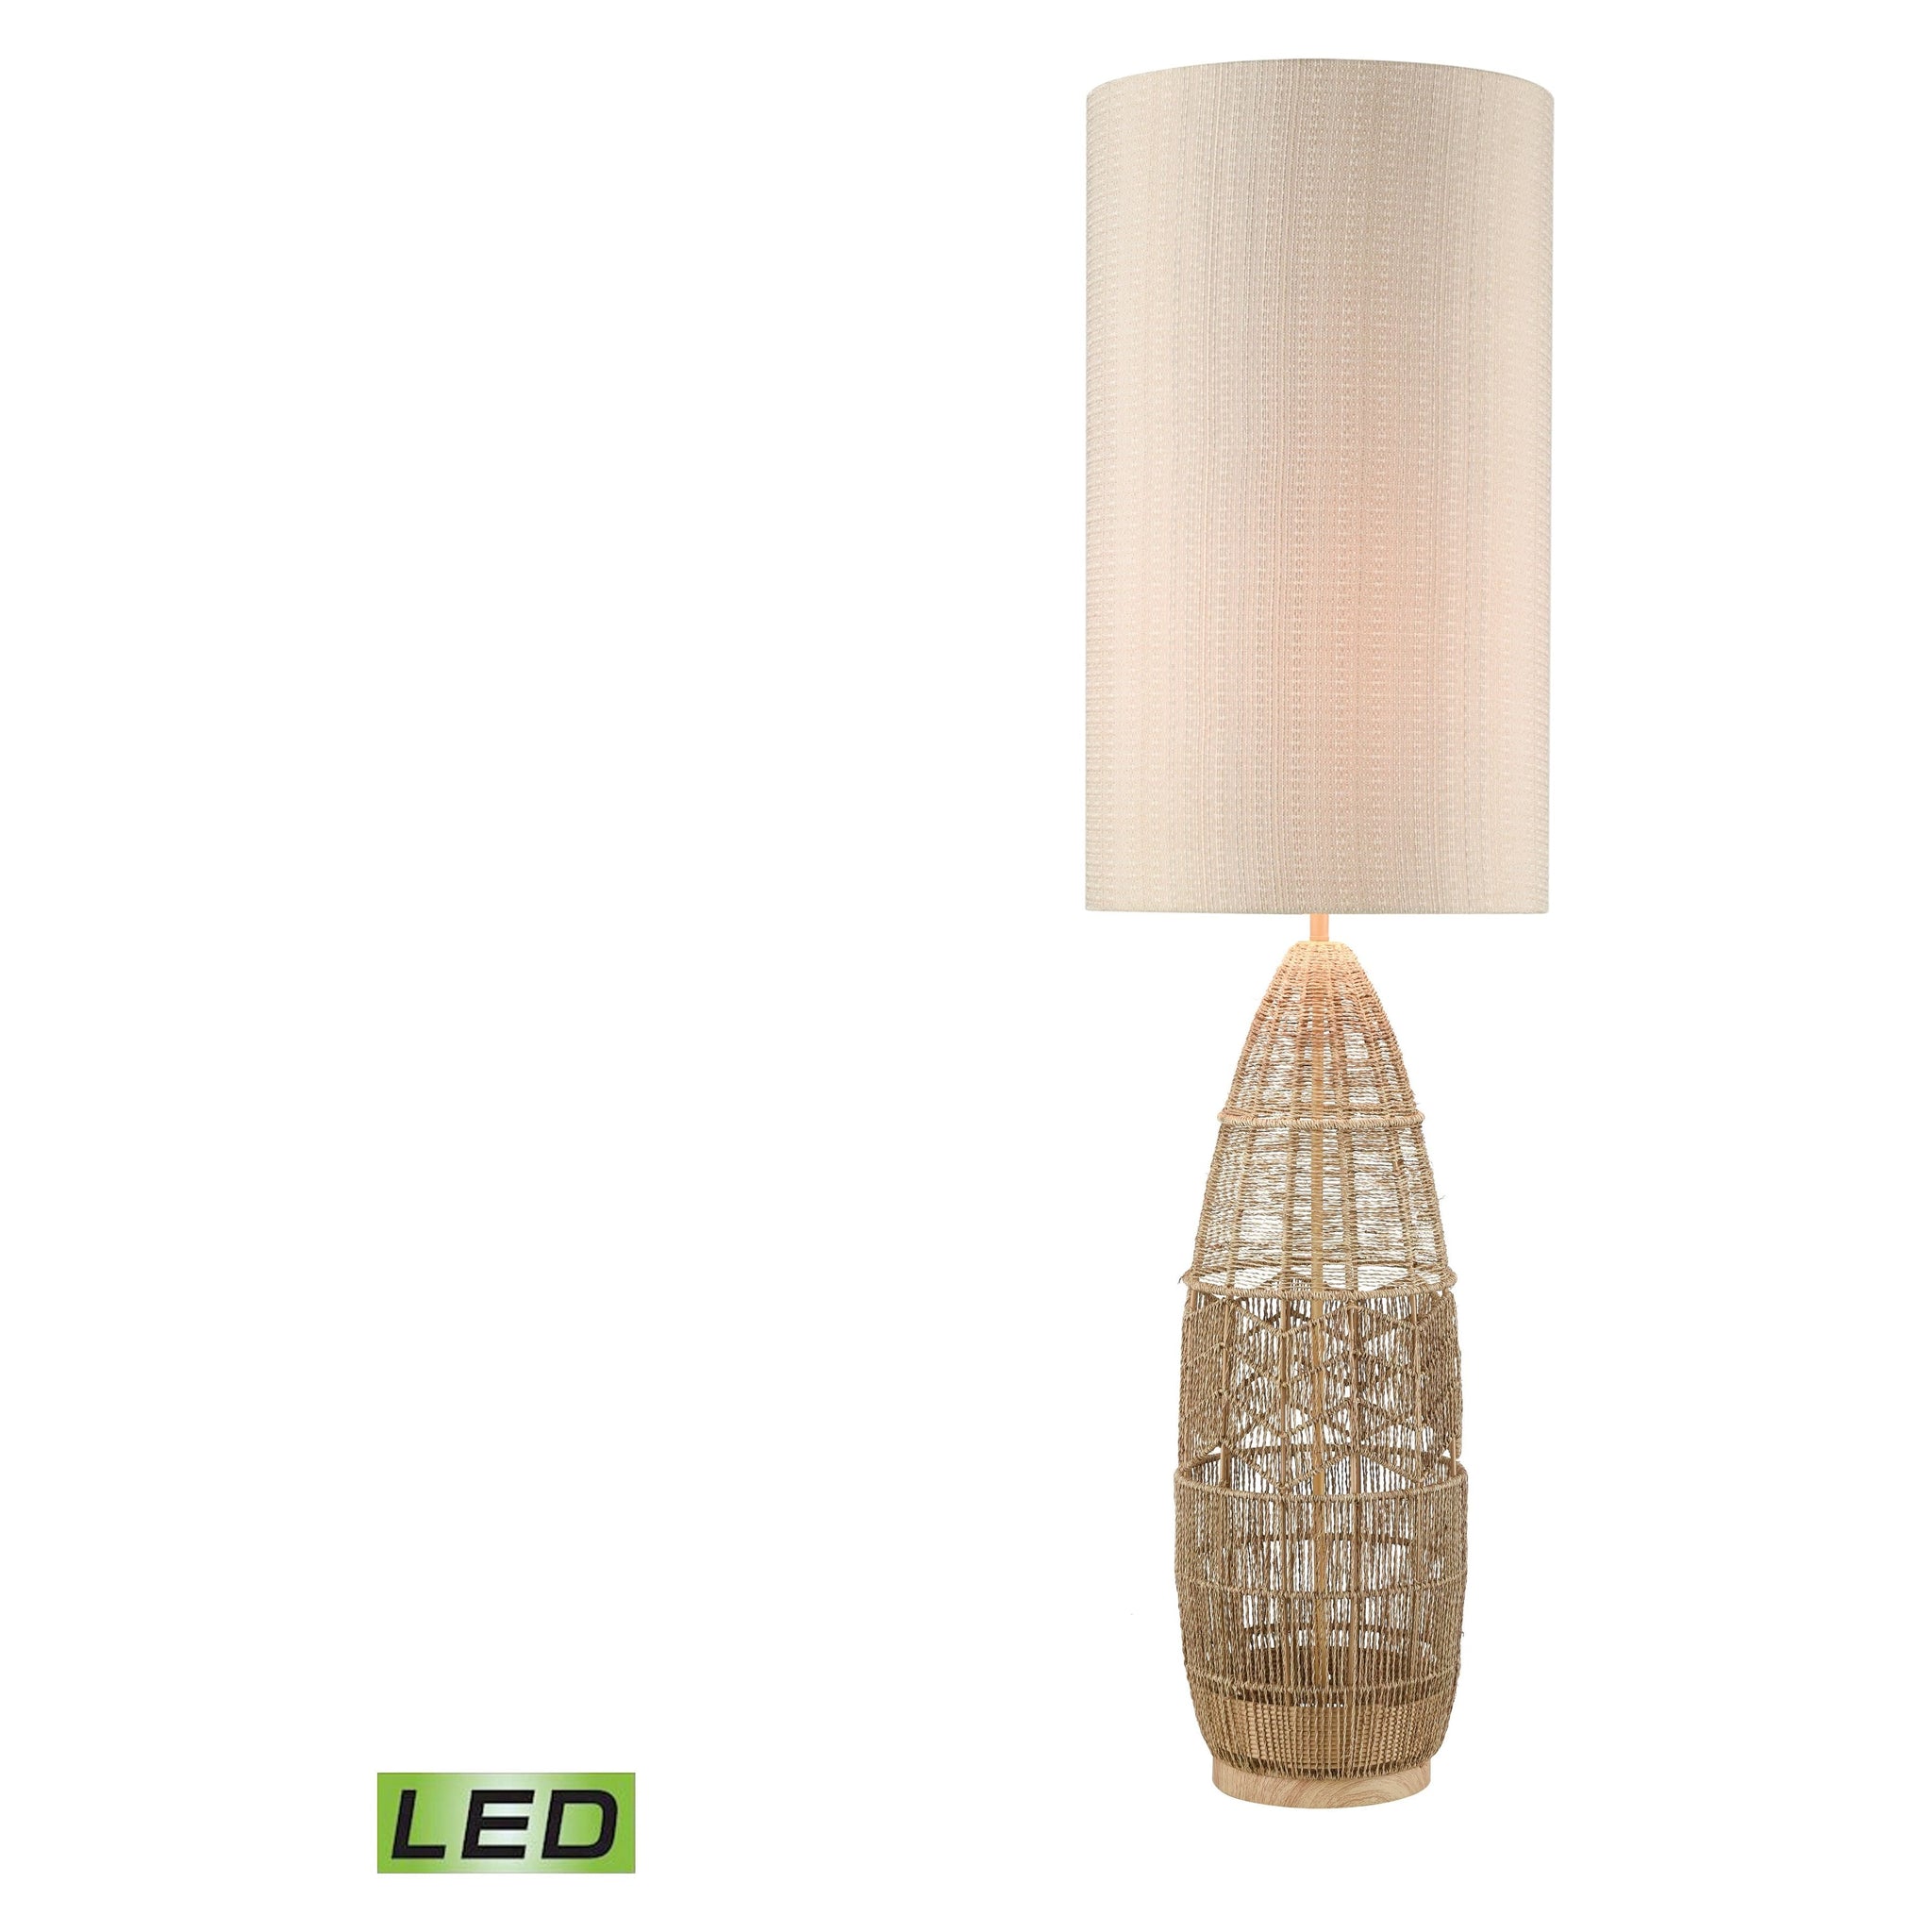 Husk 55" High 1-Light Floor Lamp